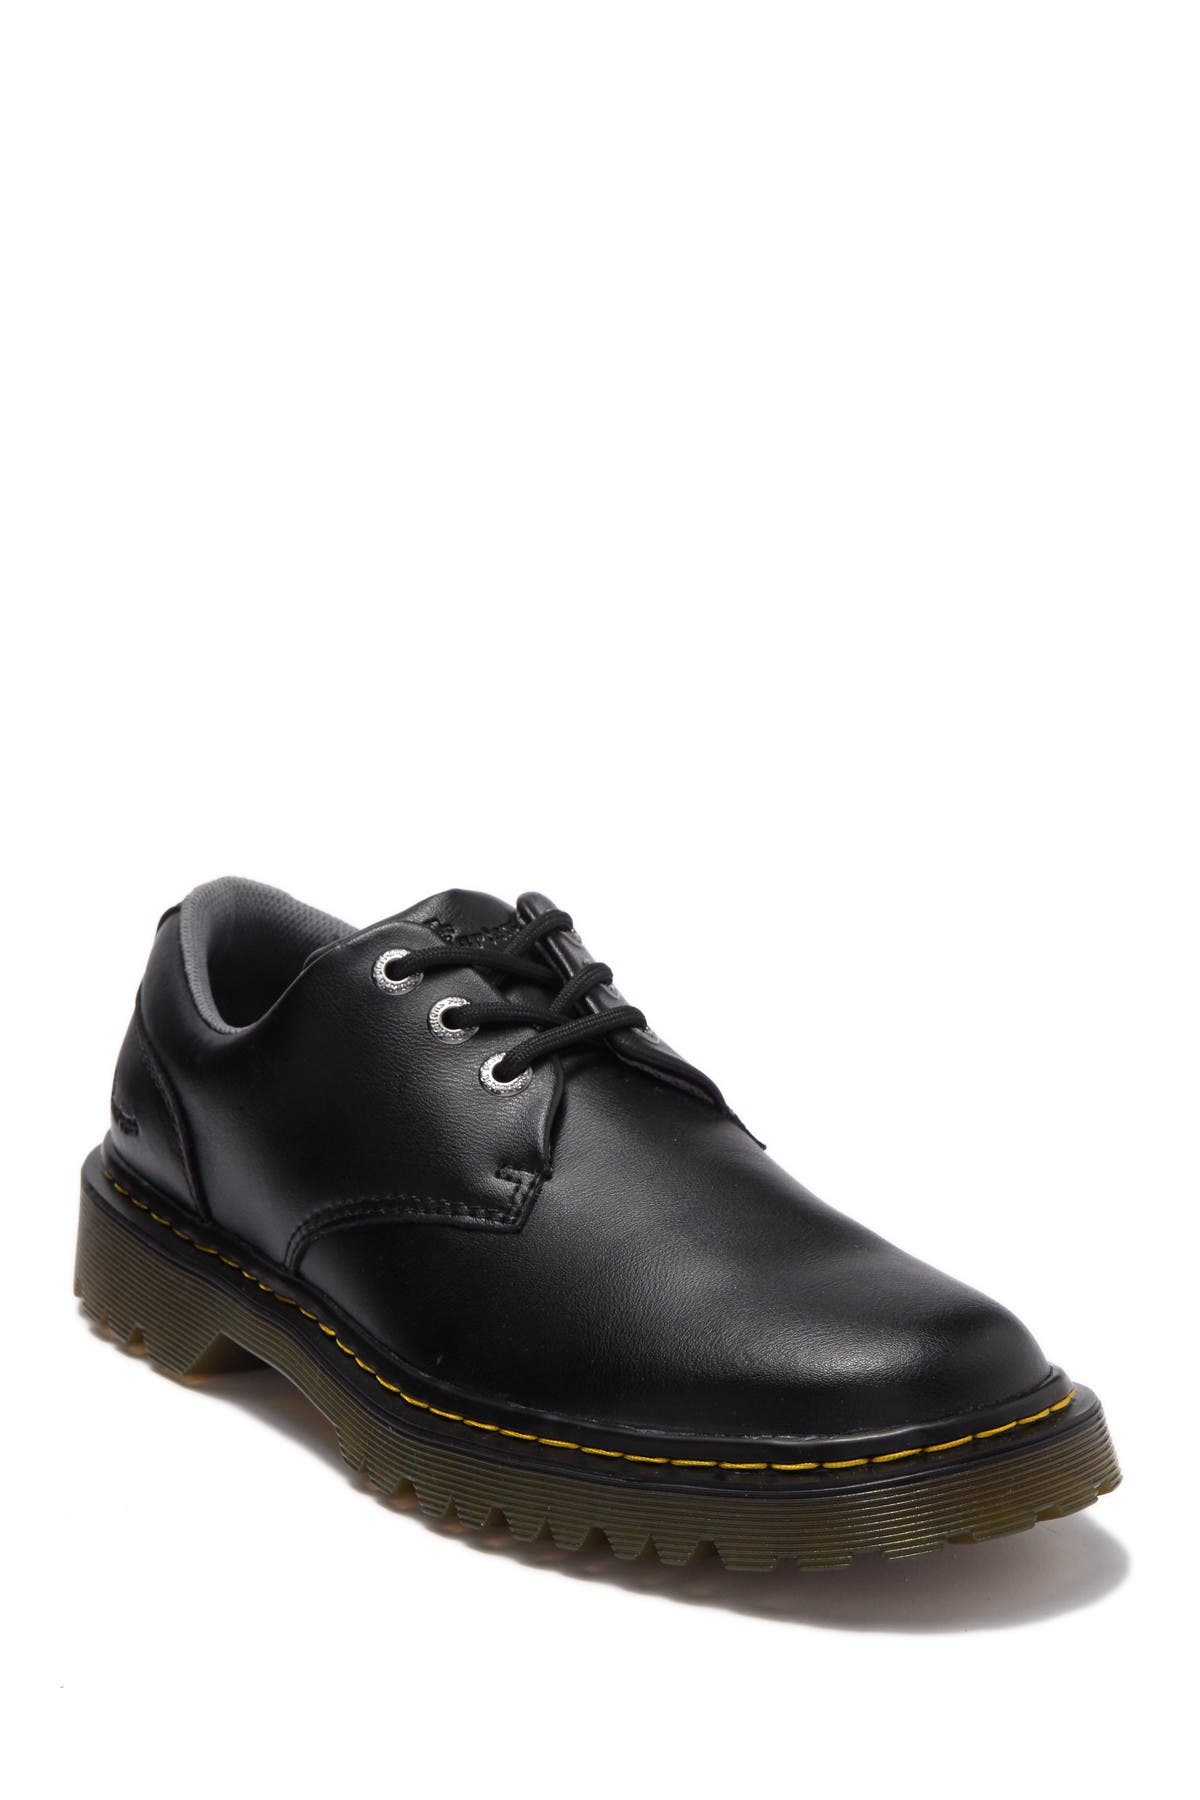 Dr. Martens Shoes for Men | Nordstrom Rack